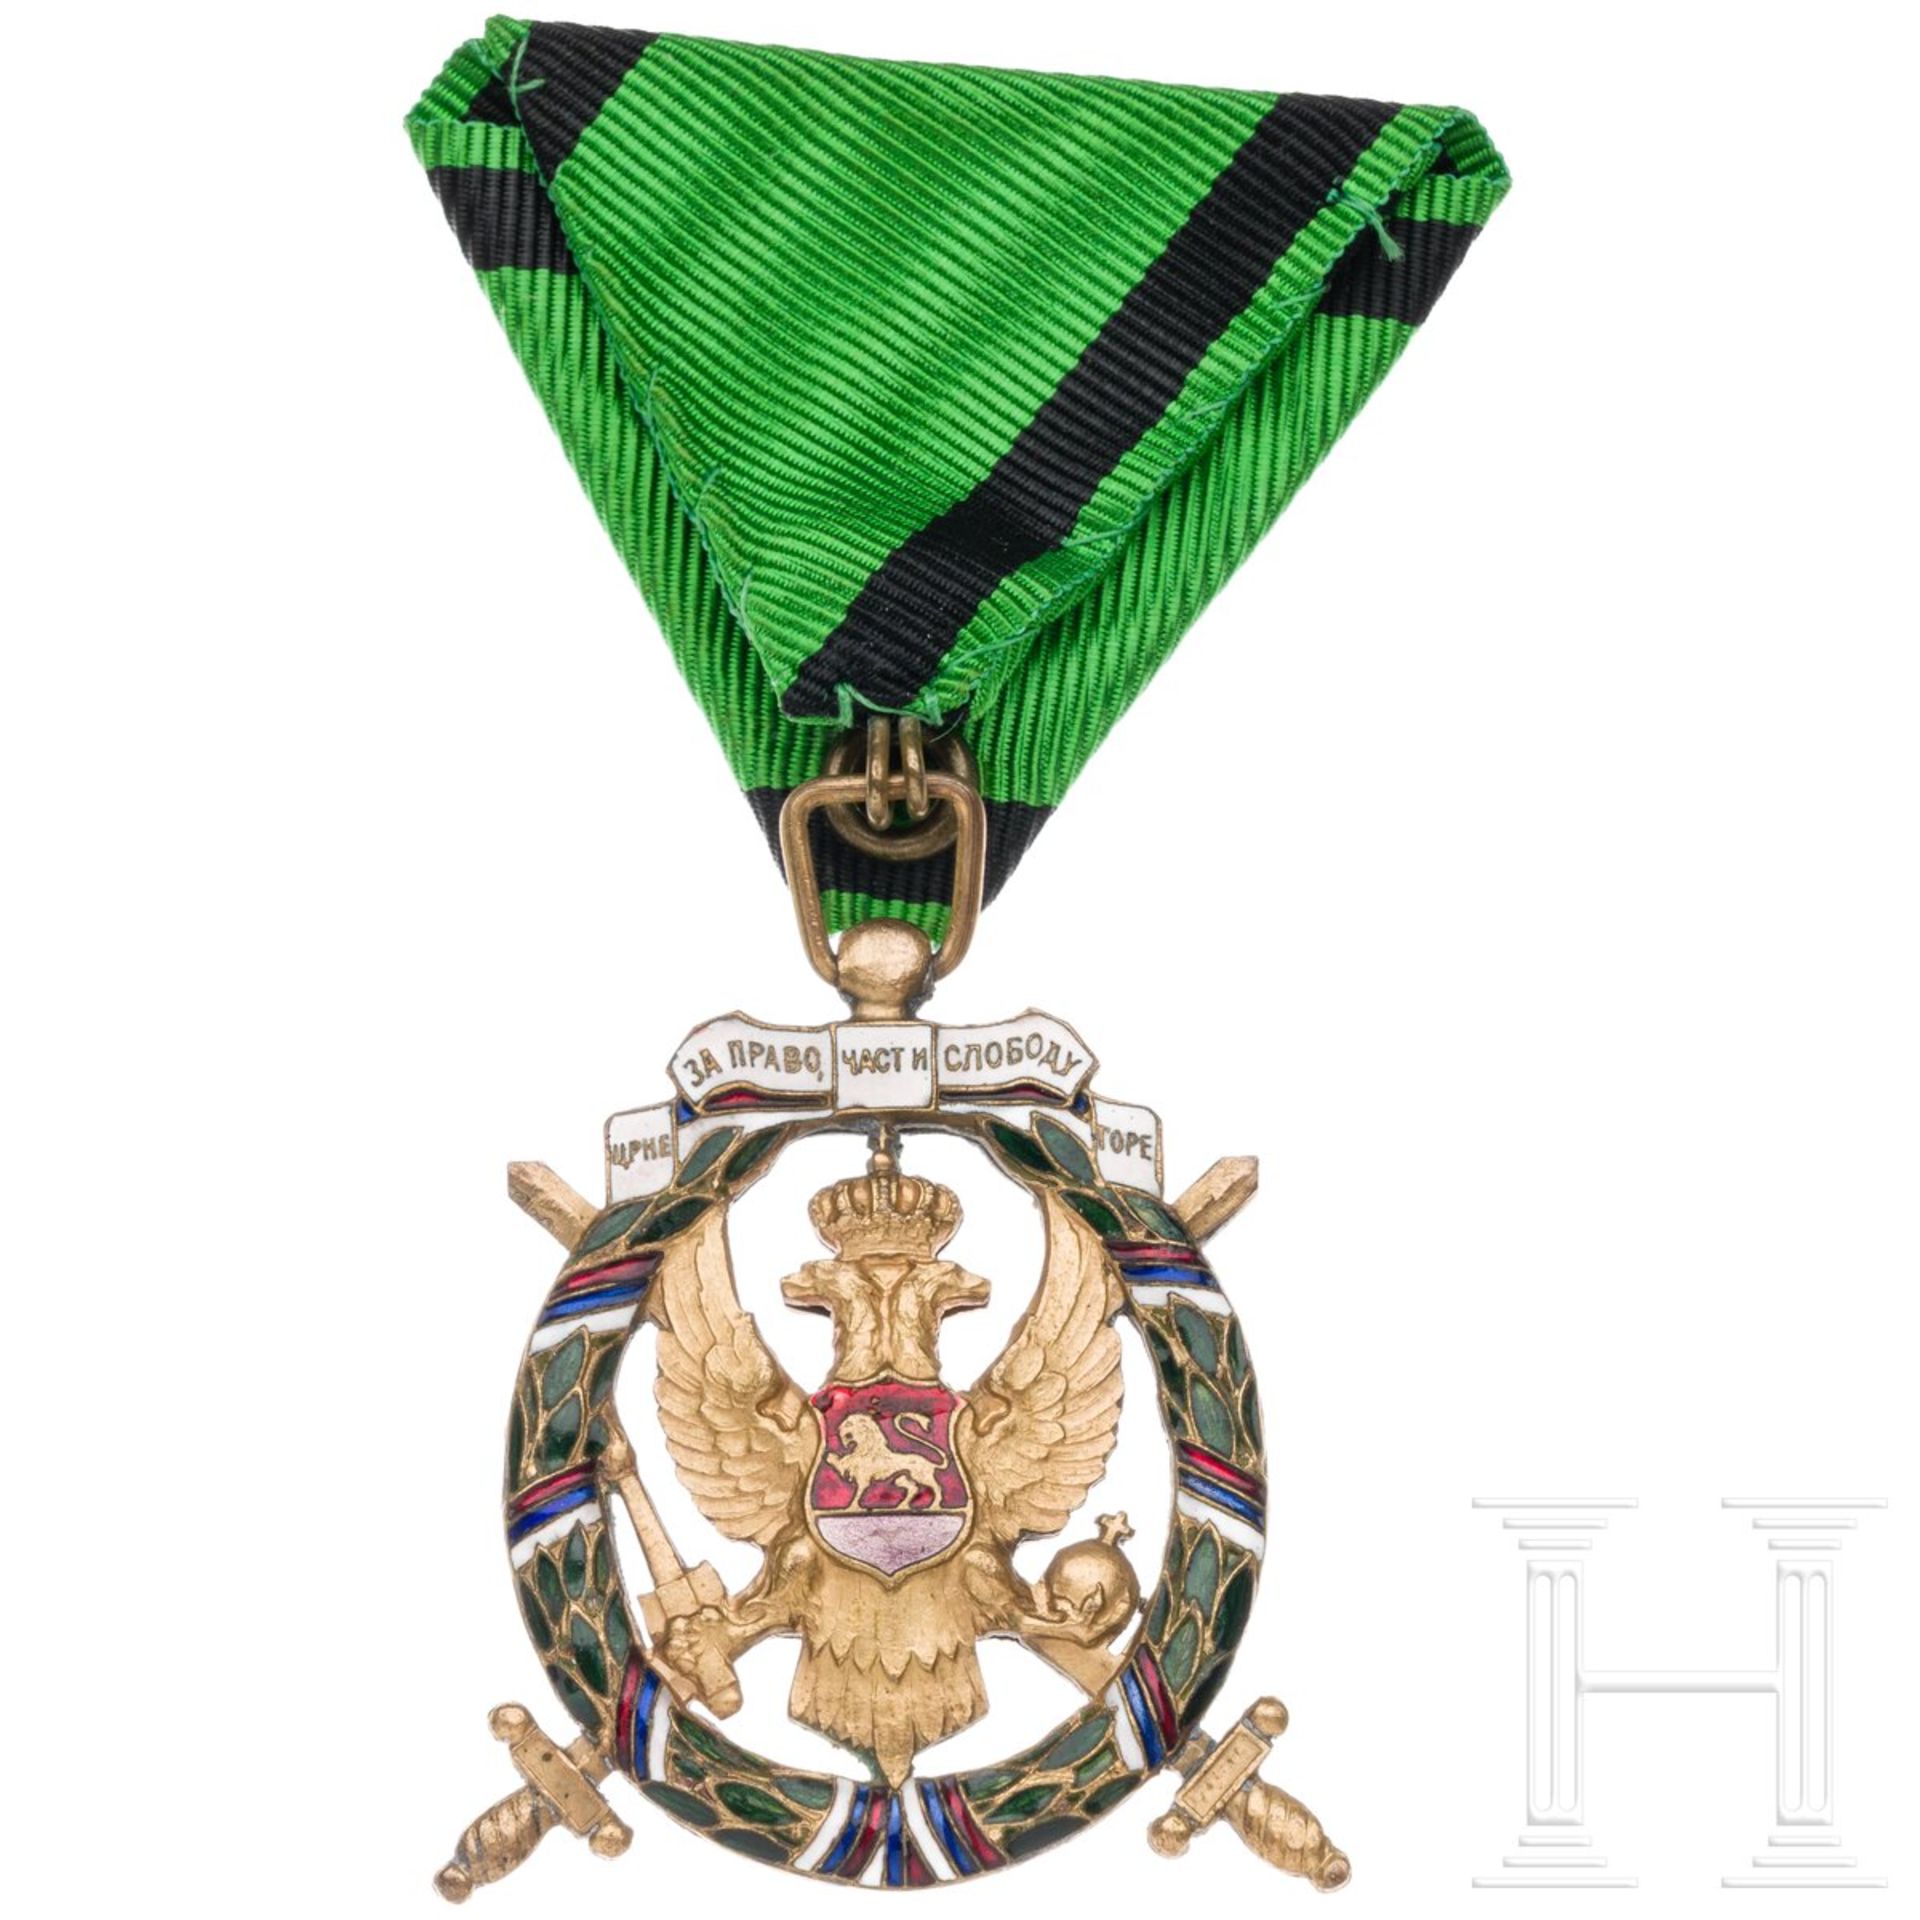 Medaille der grünen Truppen oder "Orden der Freiheit Montenegros", um 1920  - Bild 2 aus 4